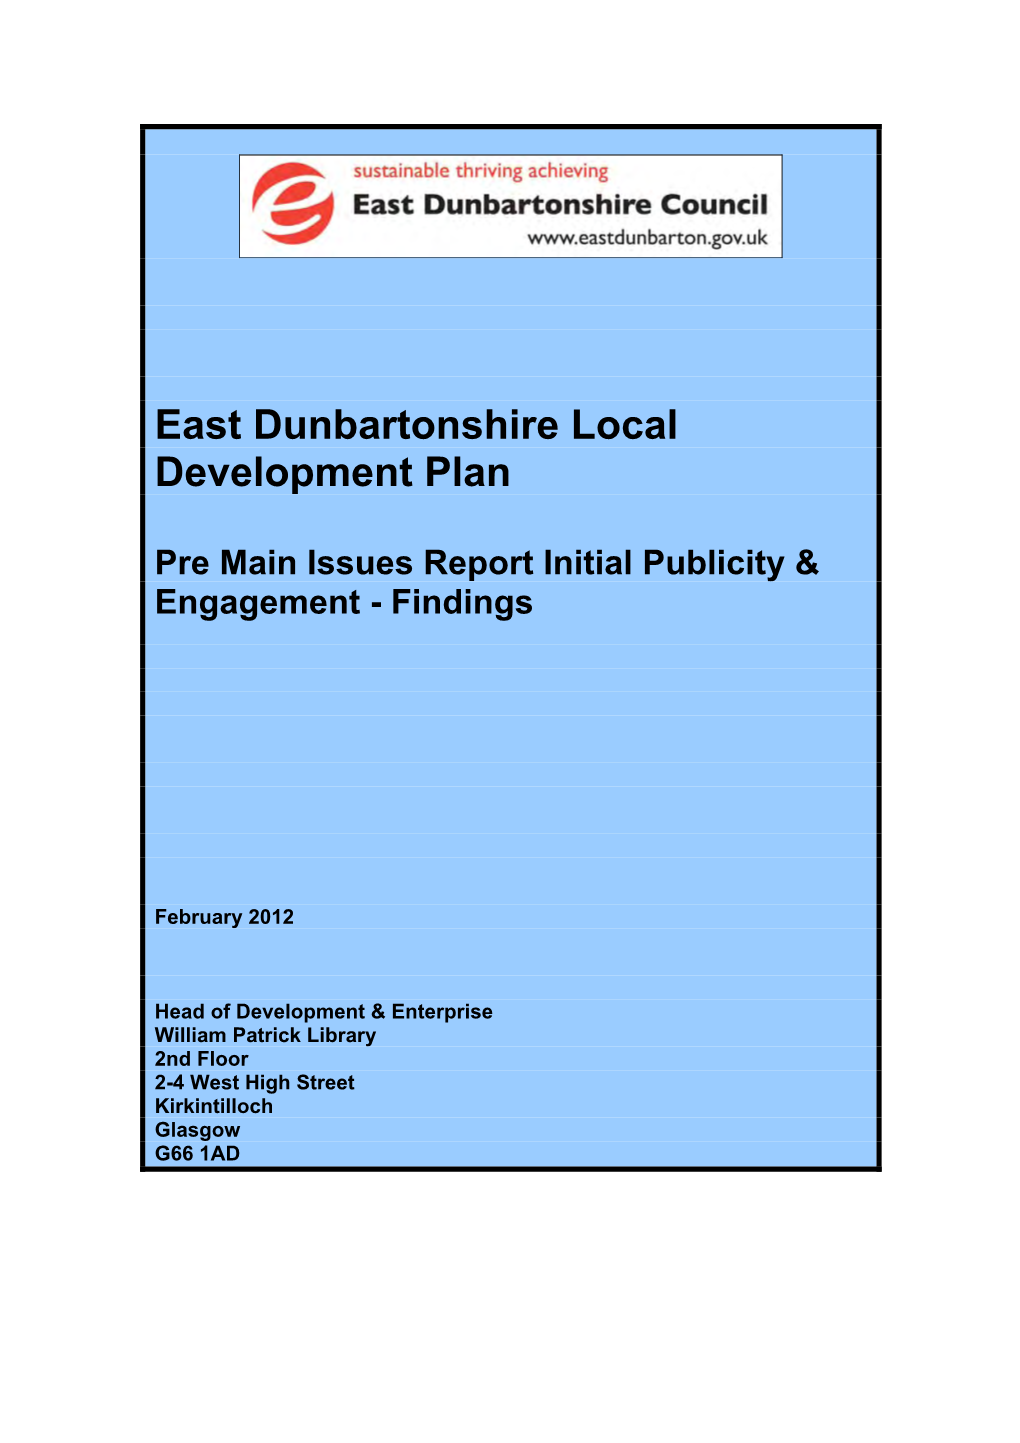 East Dunbartonshire Local Development Plan